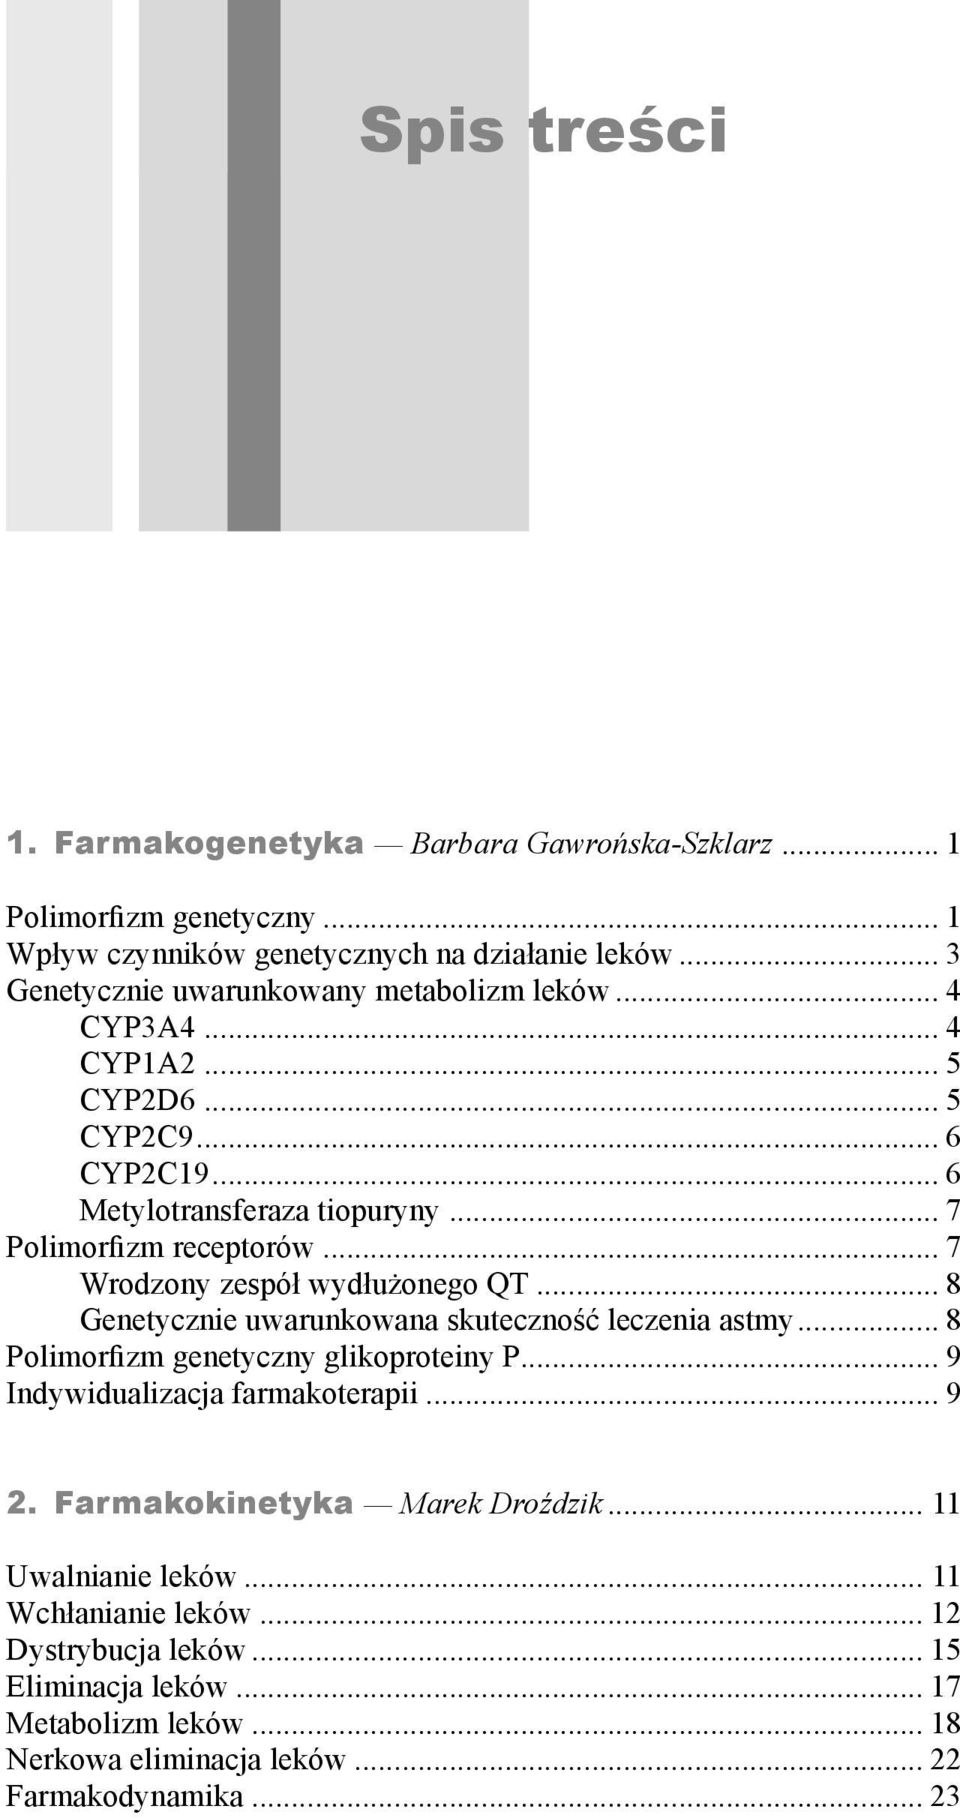 .. 7 Wrodzony zespół wydłużonego QT... 8 Genetycznie uwarunkowana skuteczność leczenia astmy... 8 Polimorfizm genetyczny glikoproteiny P... 9 Indywidualizacja farmakoterapii.